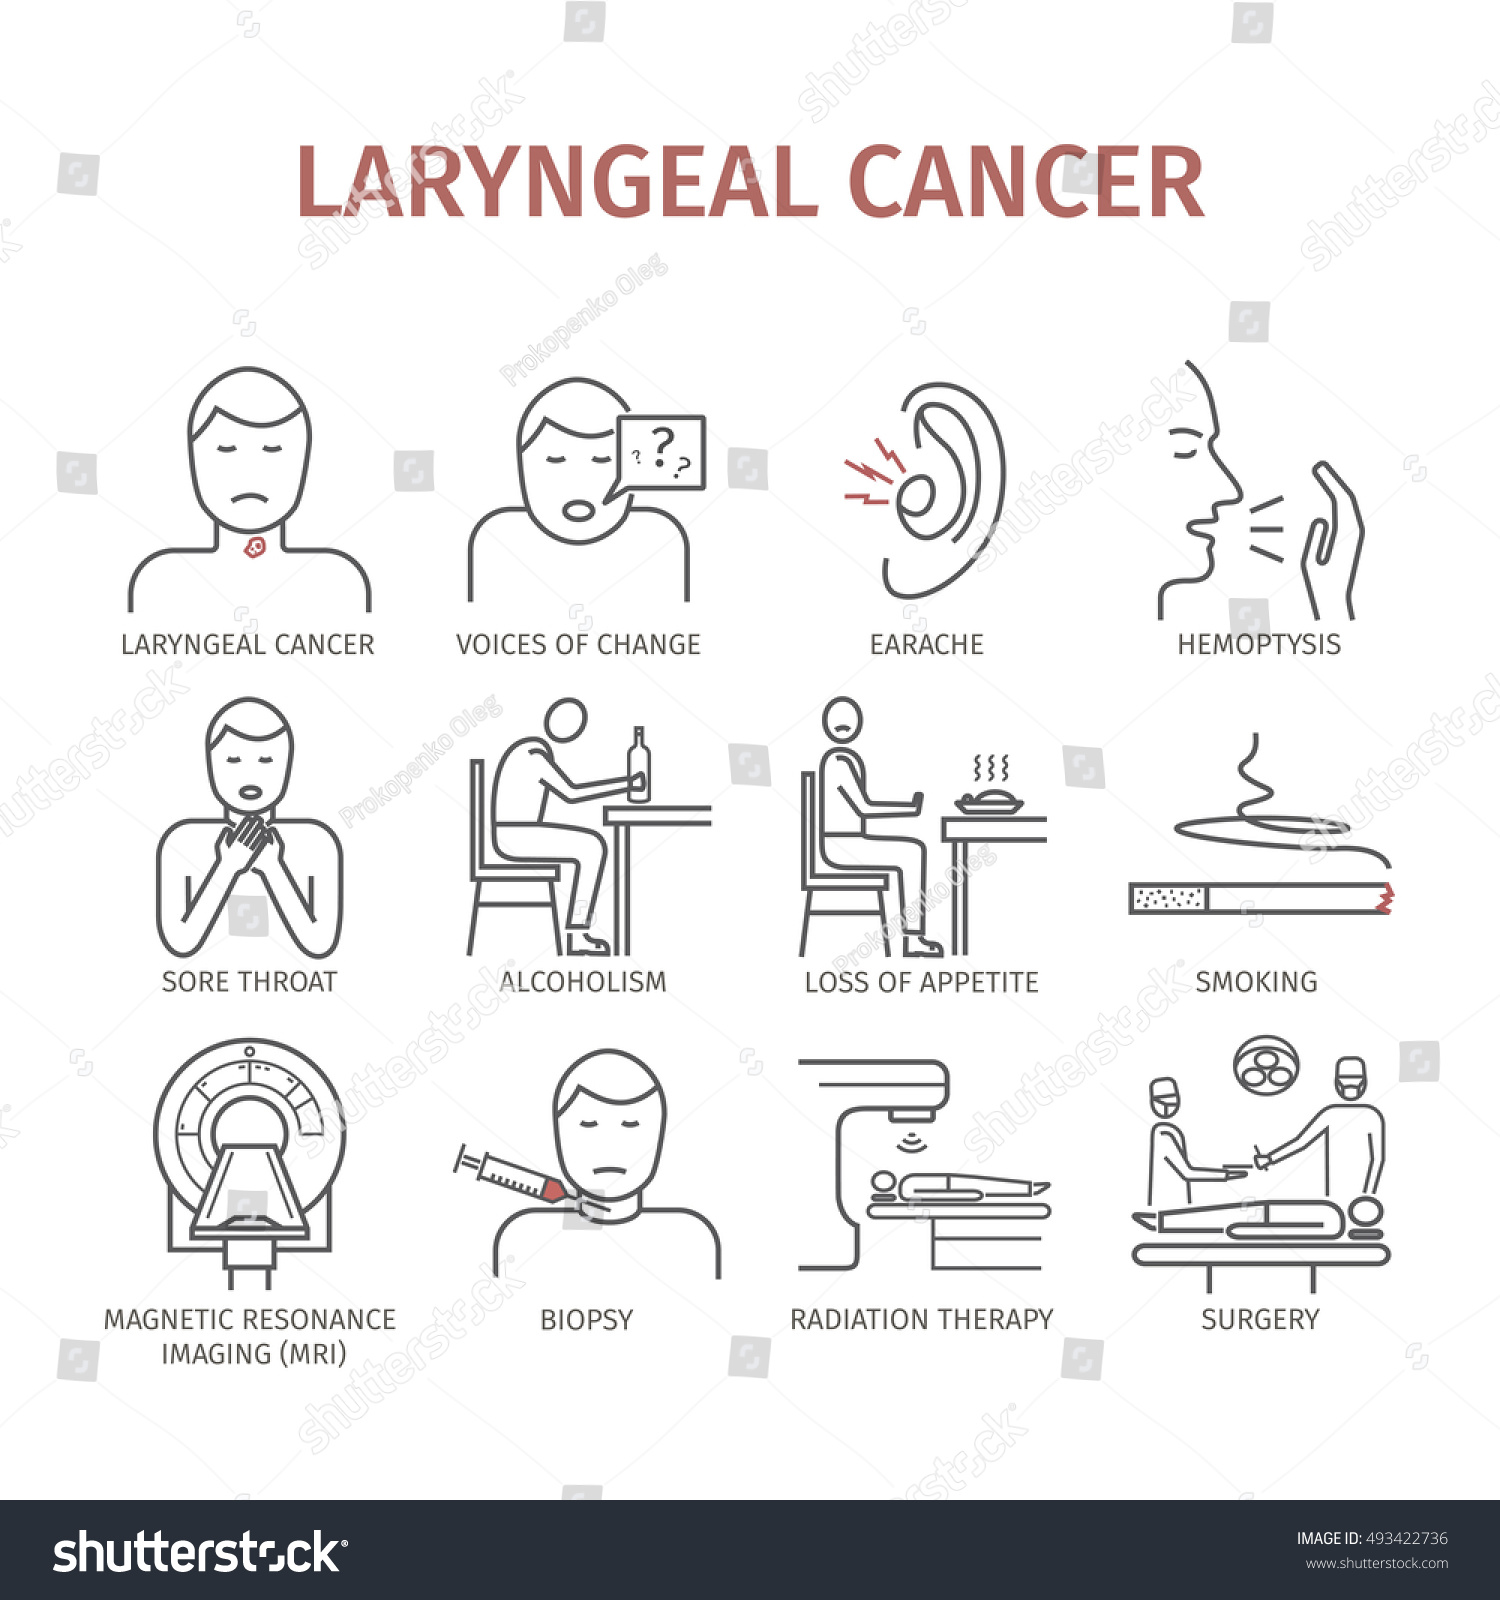 Pathophysiology Of Laryngeal Cancer 1423